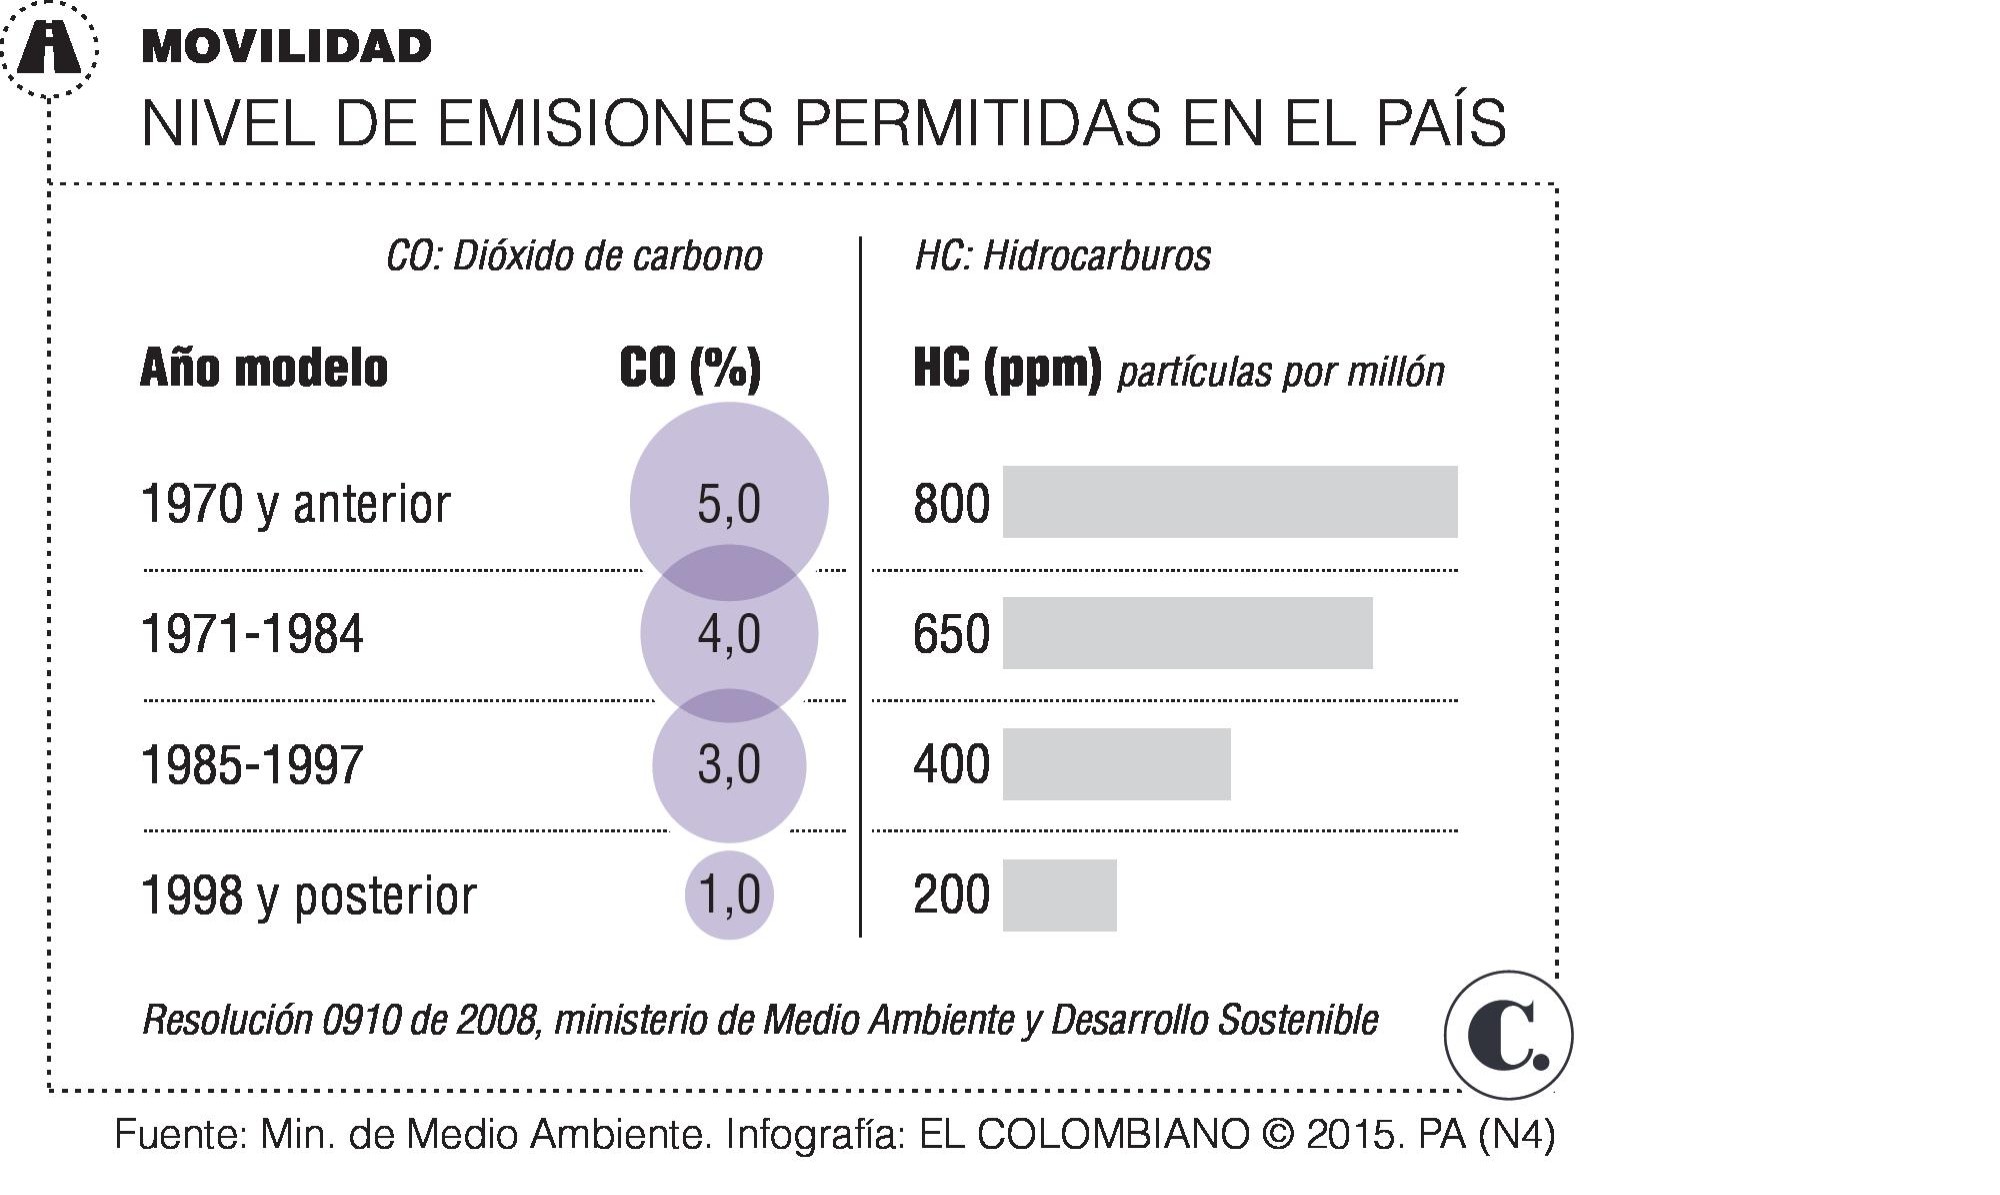 52% de los carros evaden gases